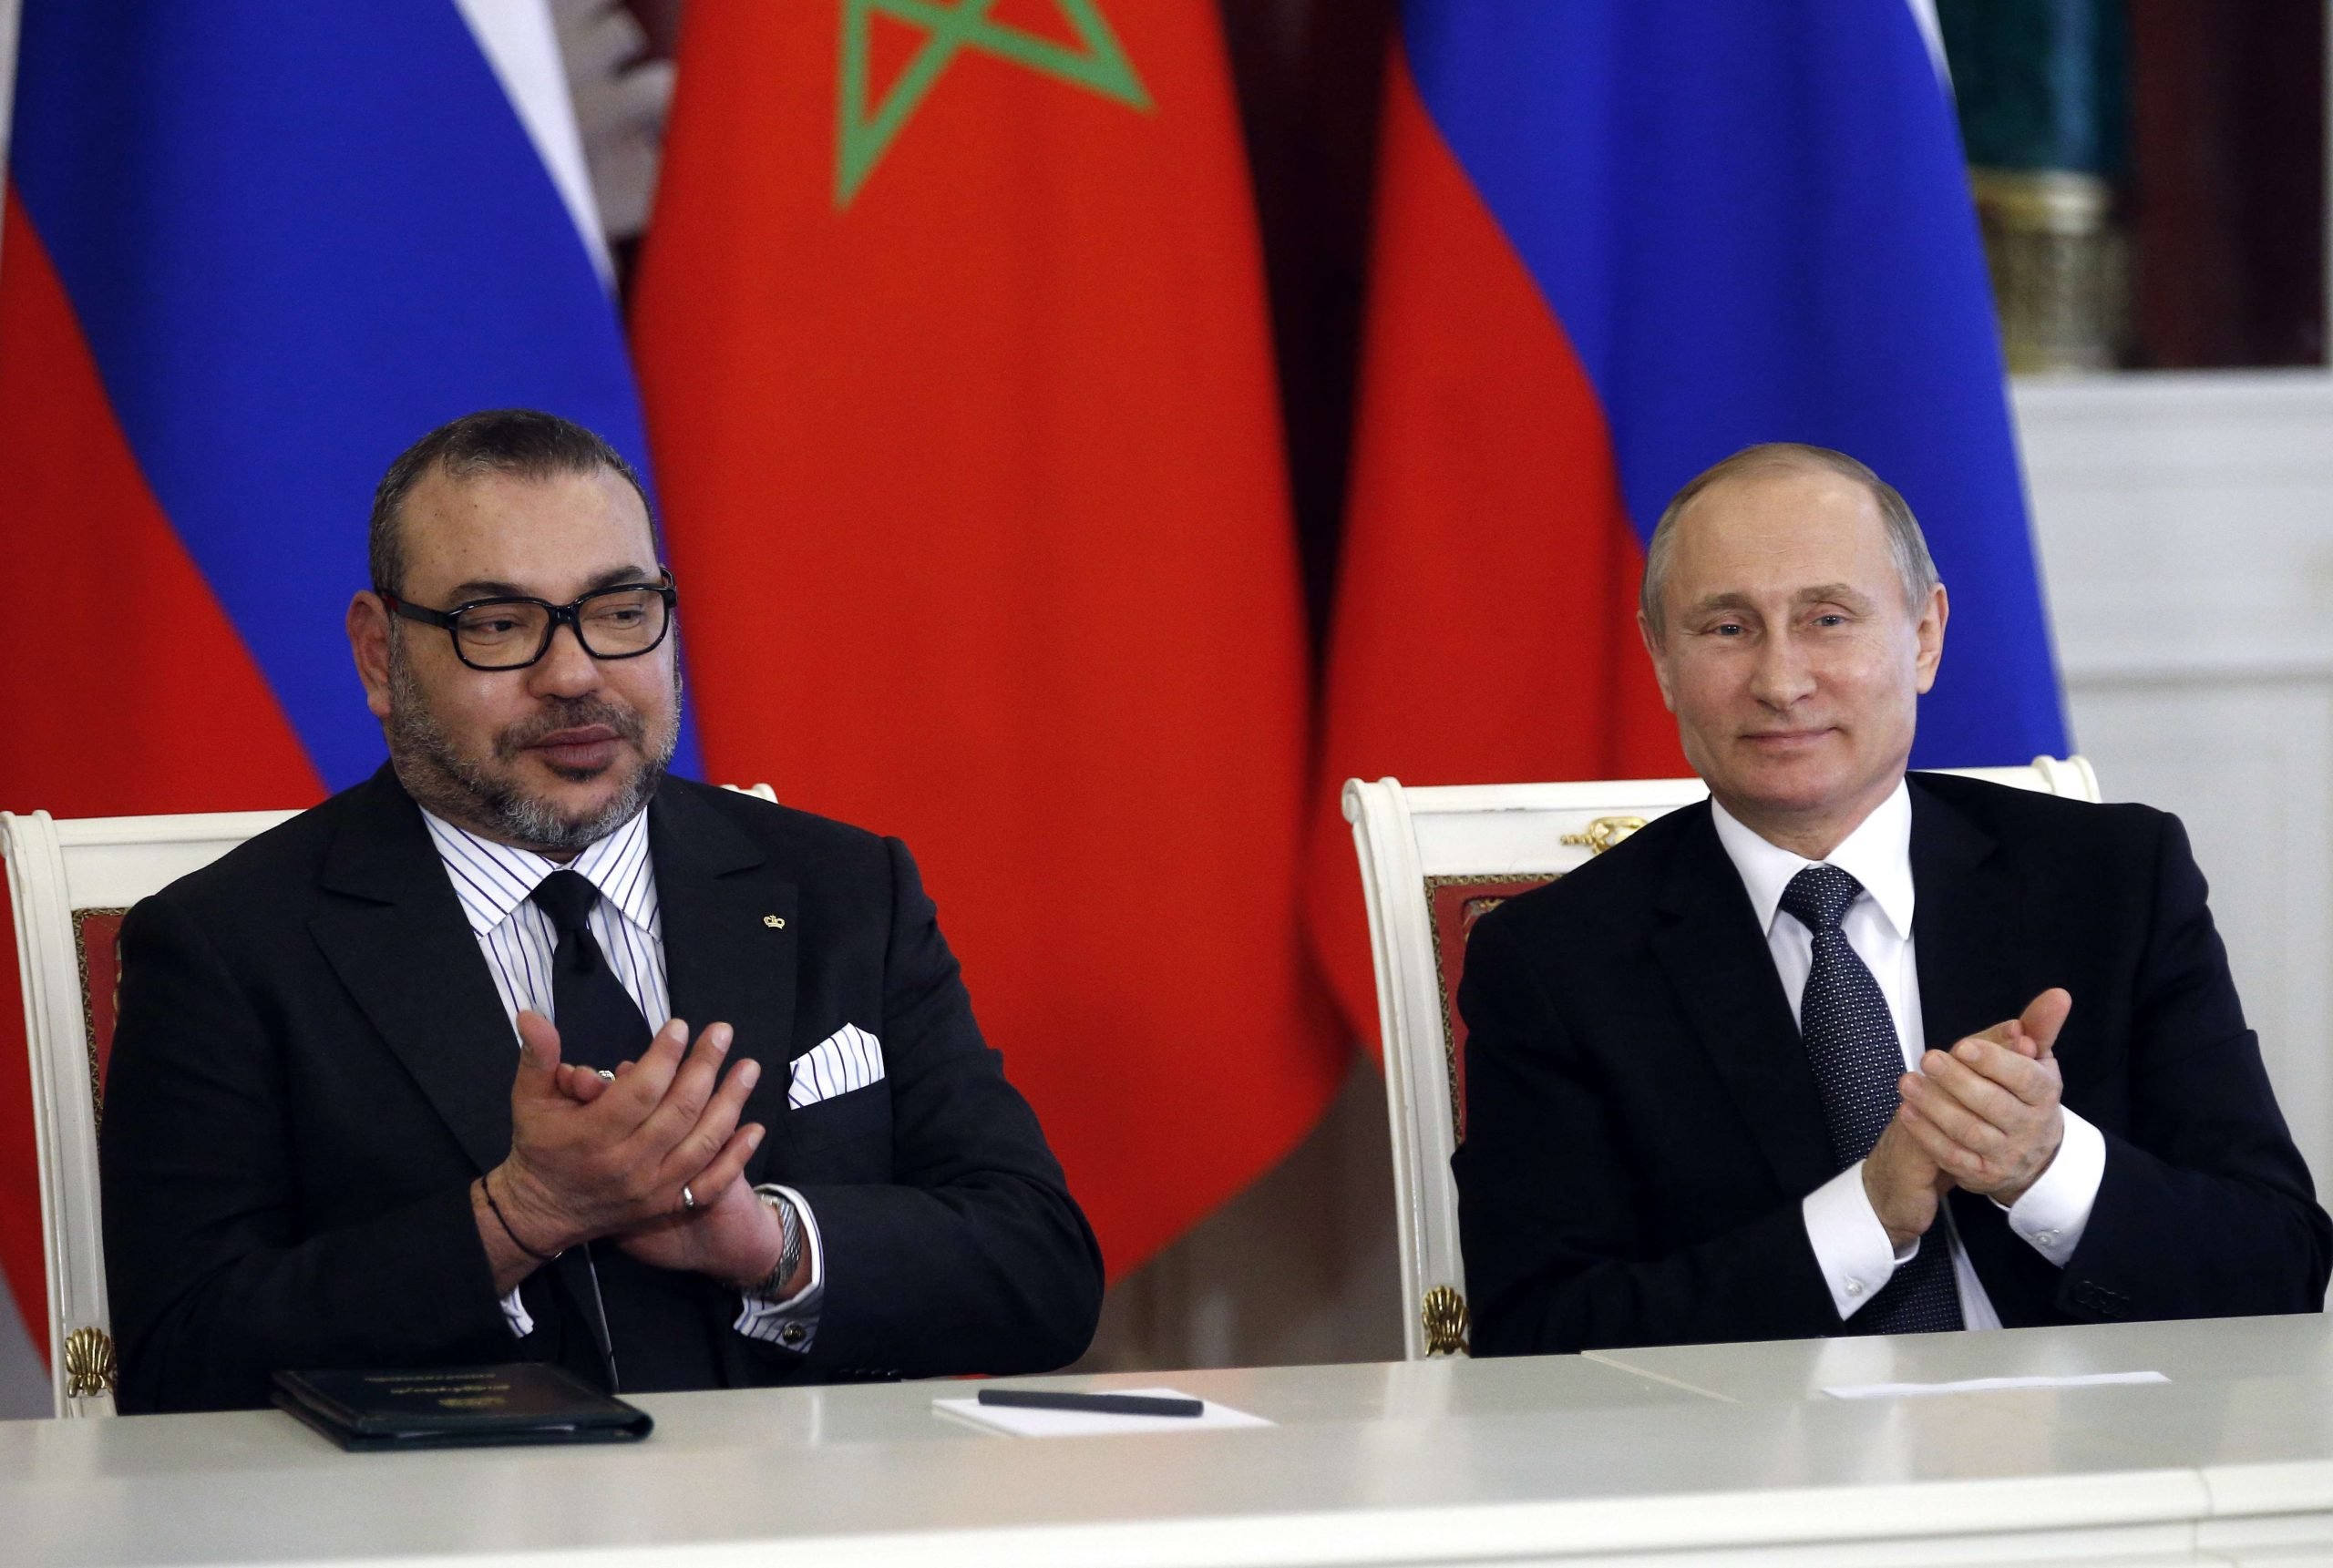 جلالة الملك محمد السادس يبعث برقية تهنئة لرئيس روسيا ويقول له :” اعبر لكم عن تقديري لما يربط بلدينا من علاقات عريقة”